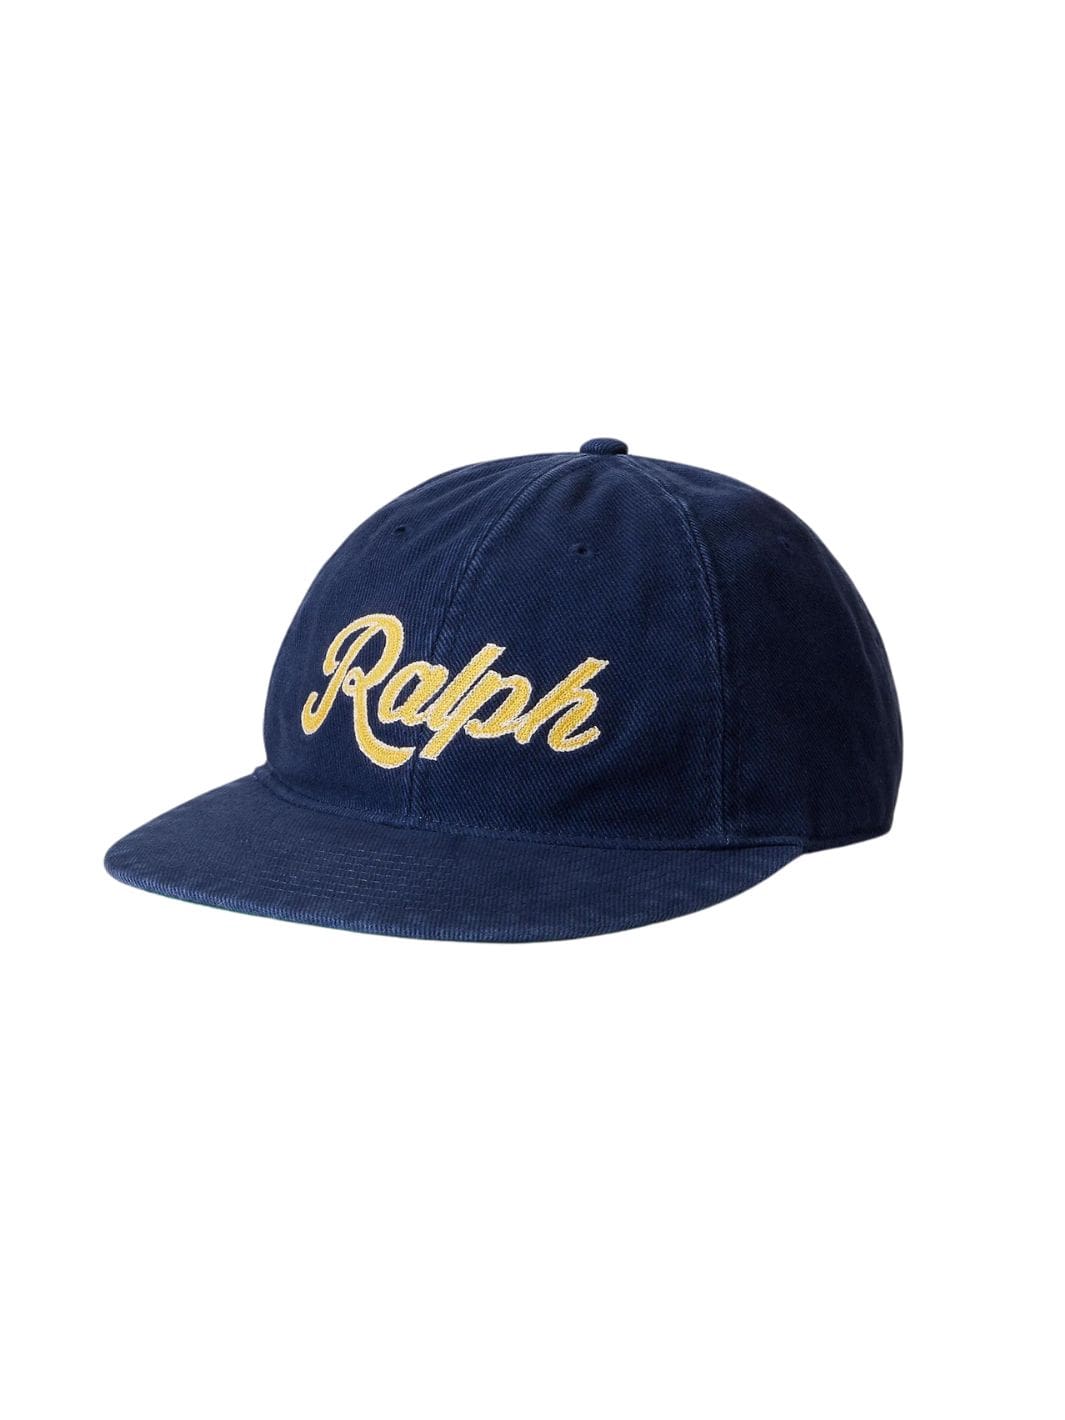 Polo Ralph Lauren Accessories Cap | Twill Ball Cap Navy